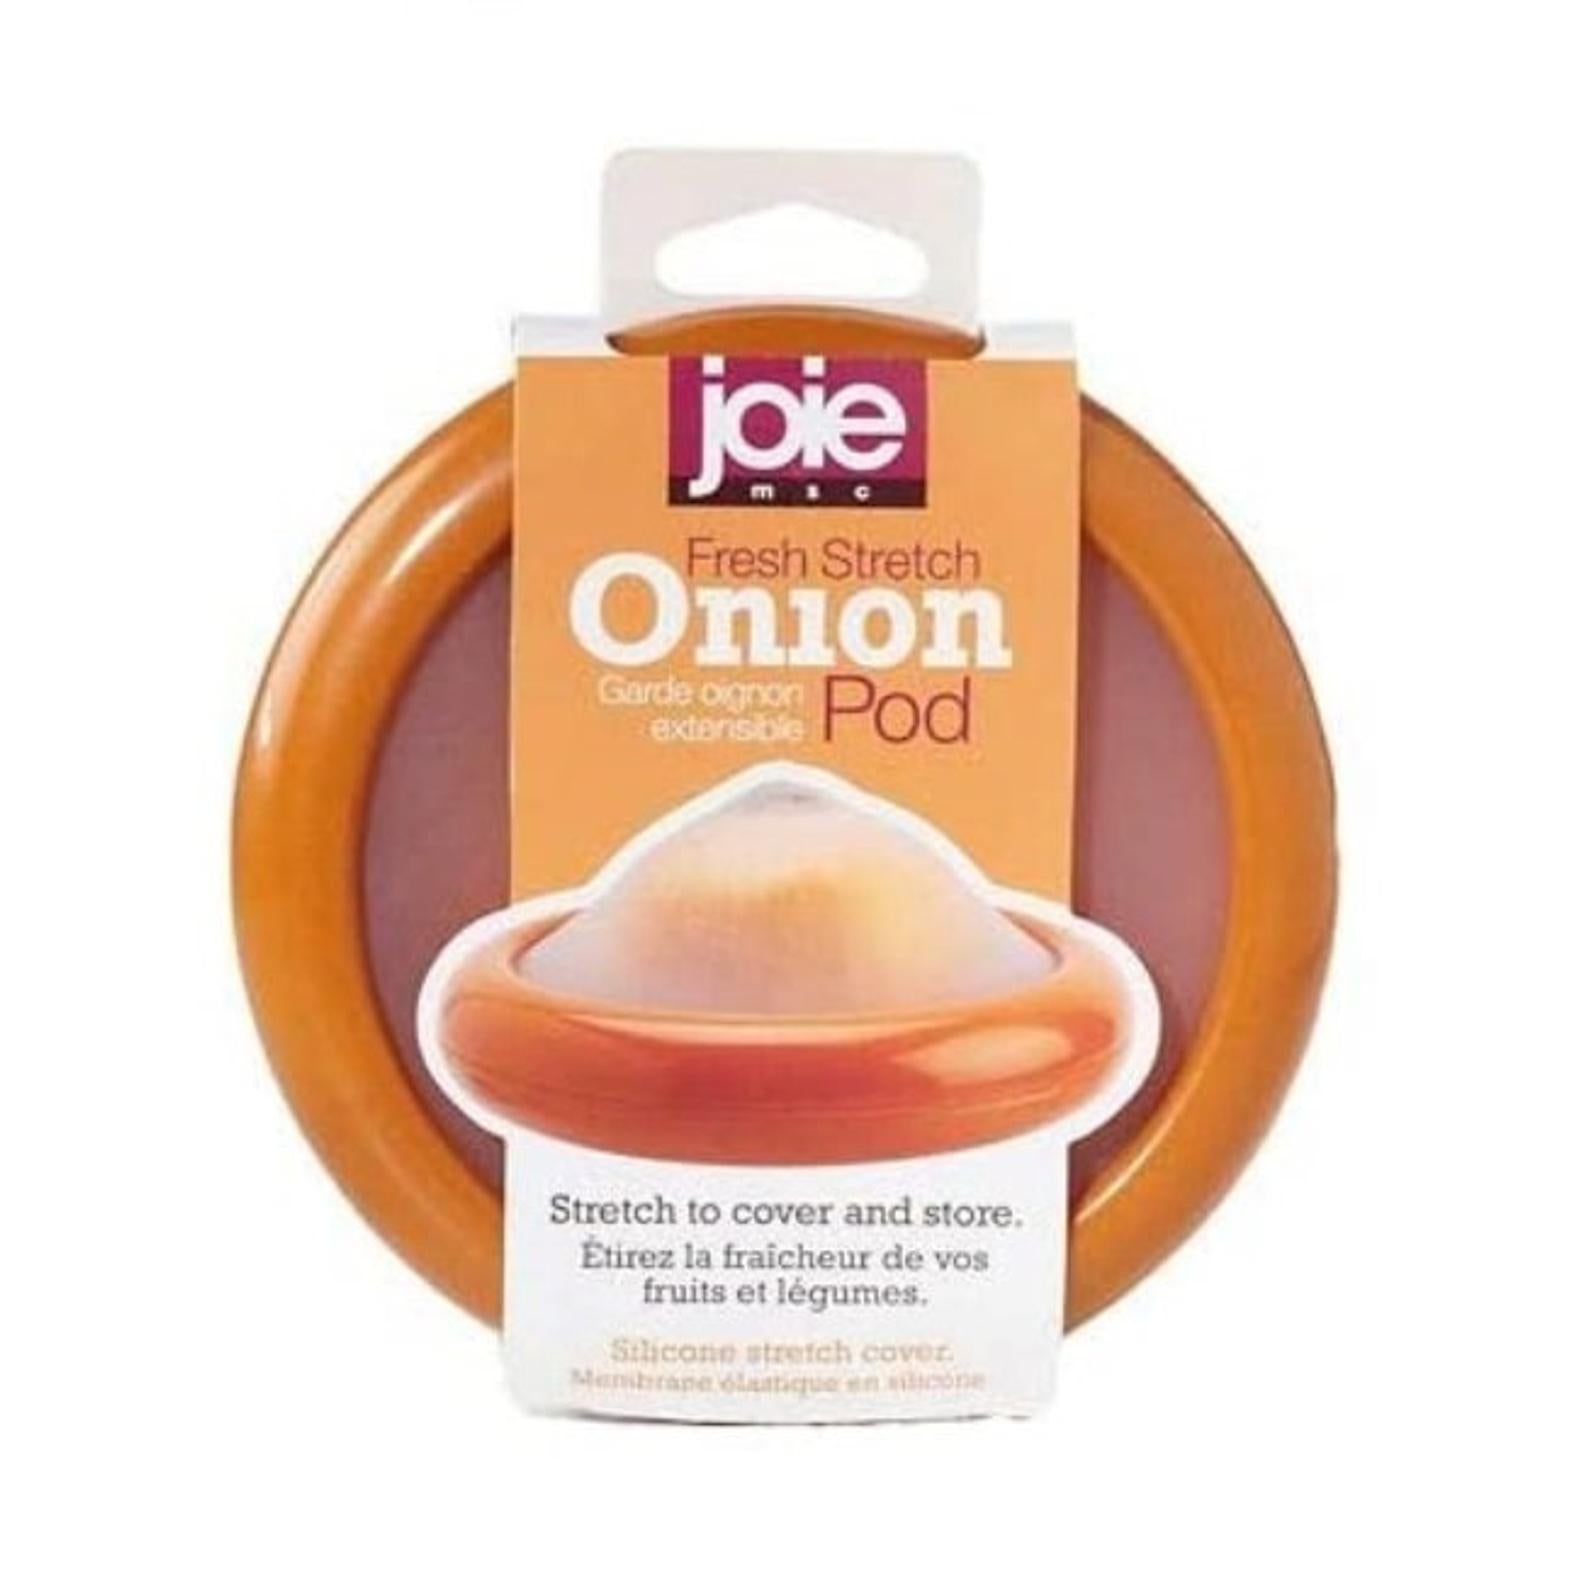 Joie Fresh Stretch Onion Pod